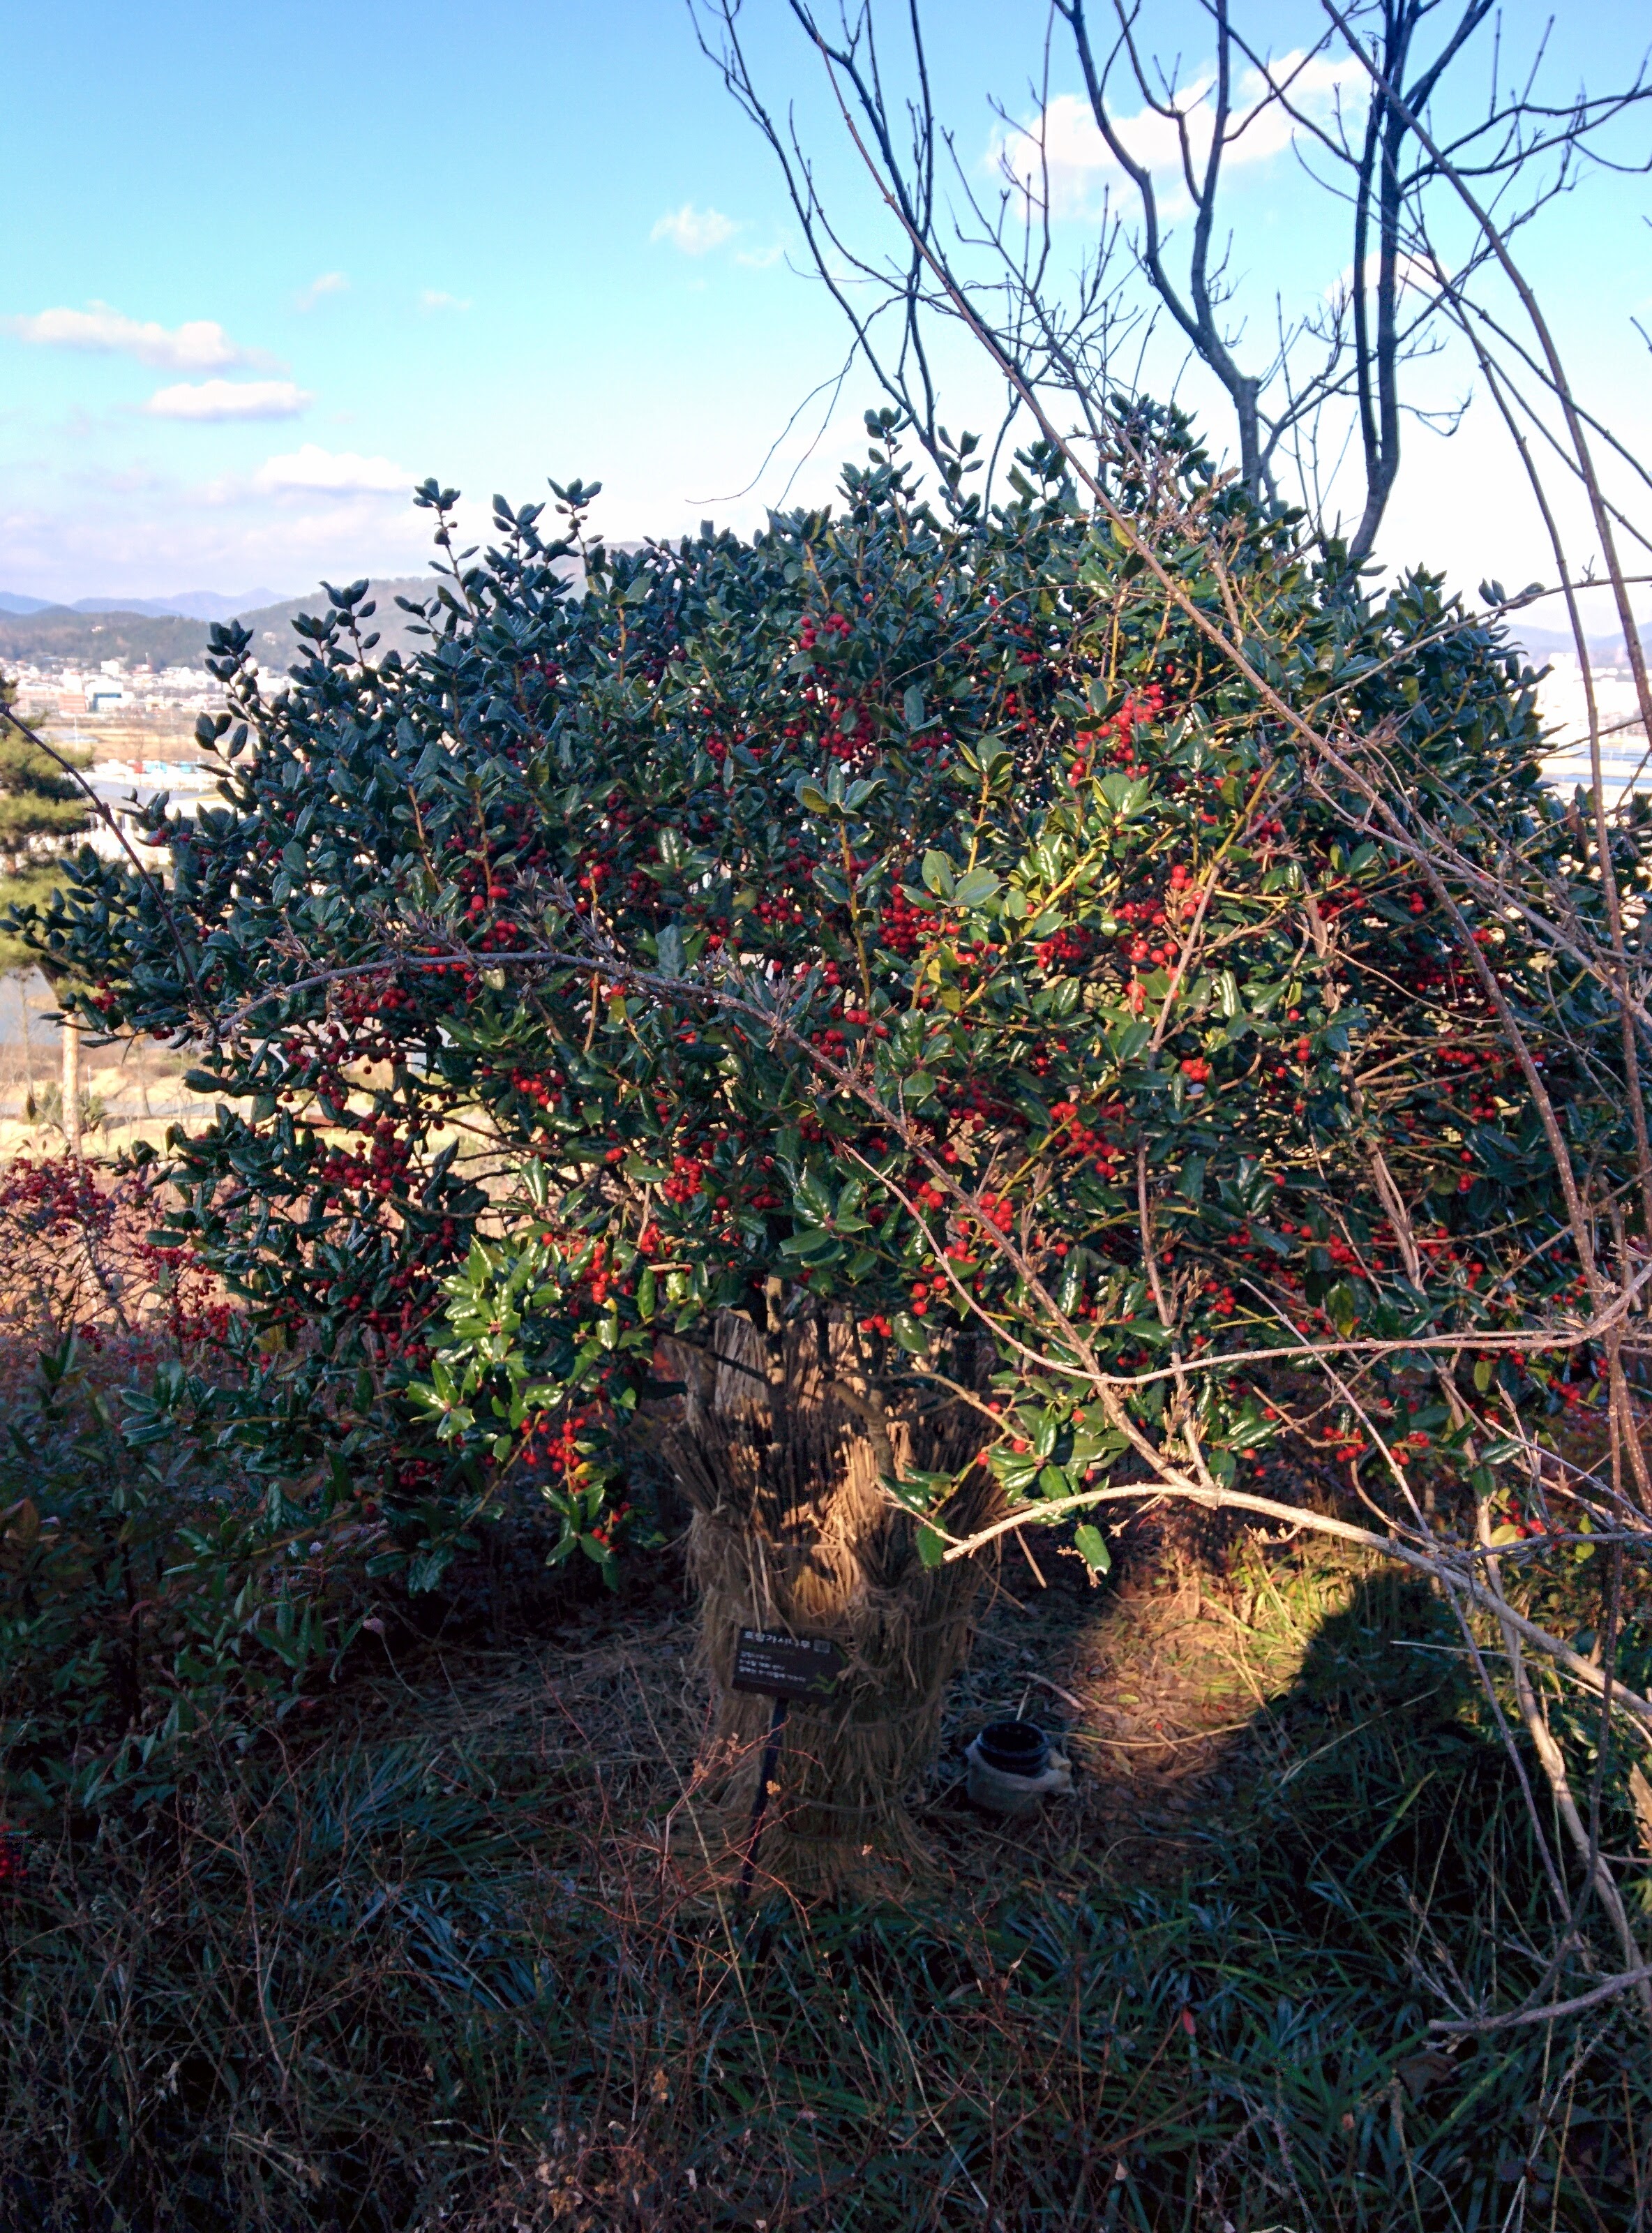 IMG_20151228_143126.jpg 붉은색 열매를 잔뜩 매단 호랑가시나무